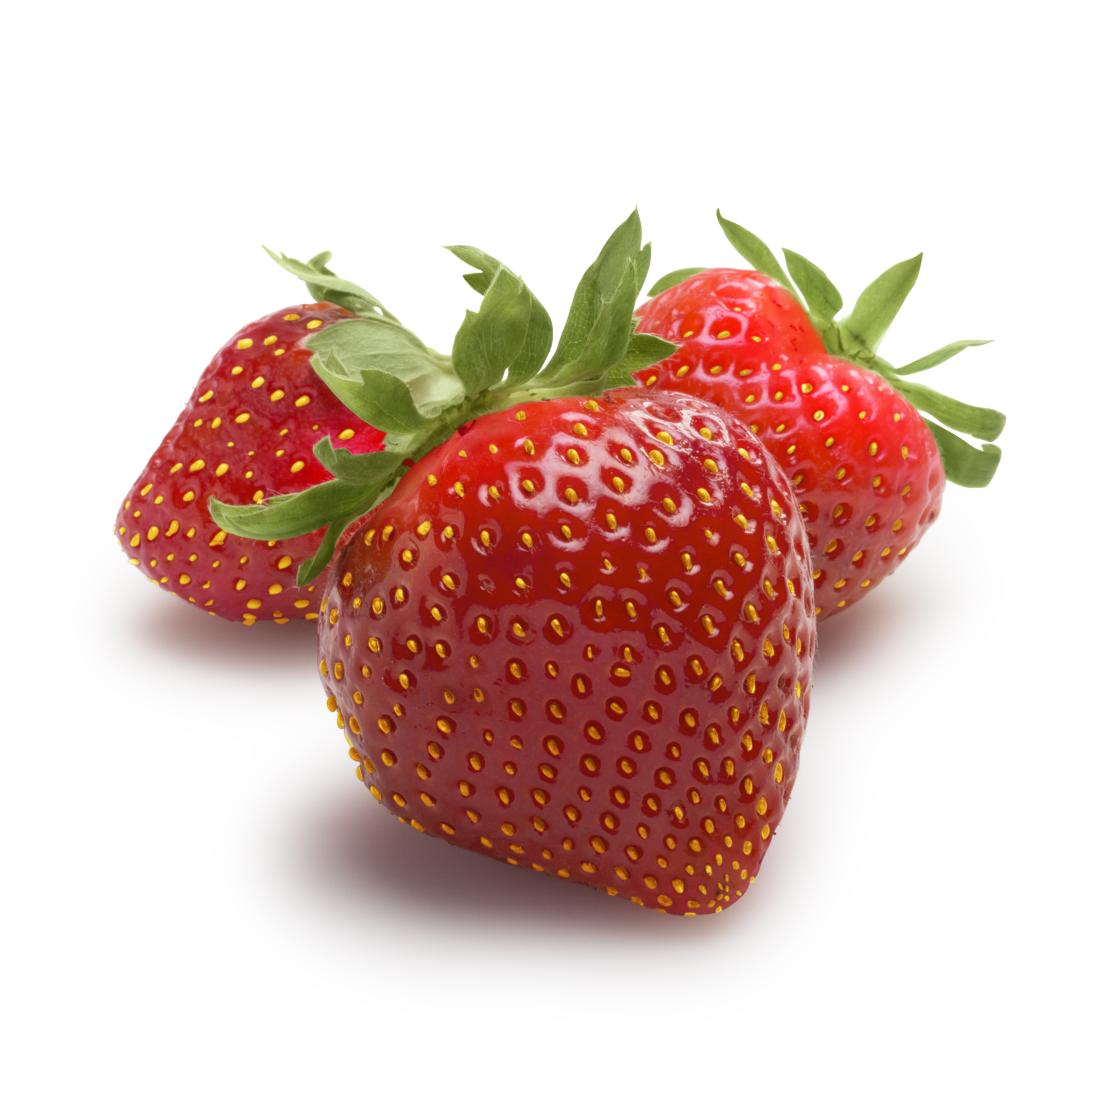 Strawberries 1